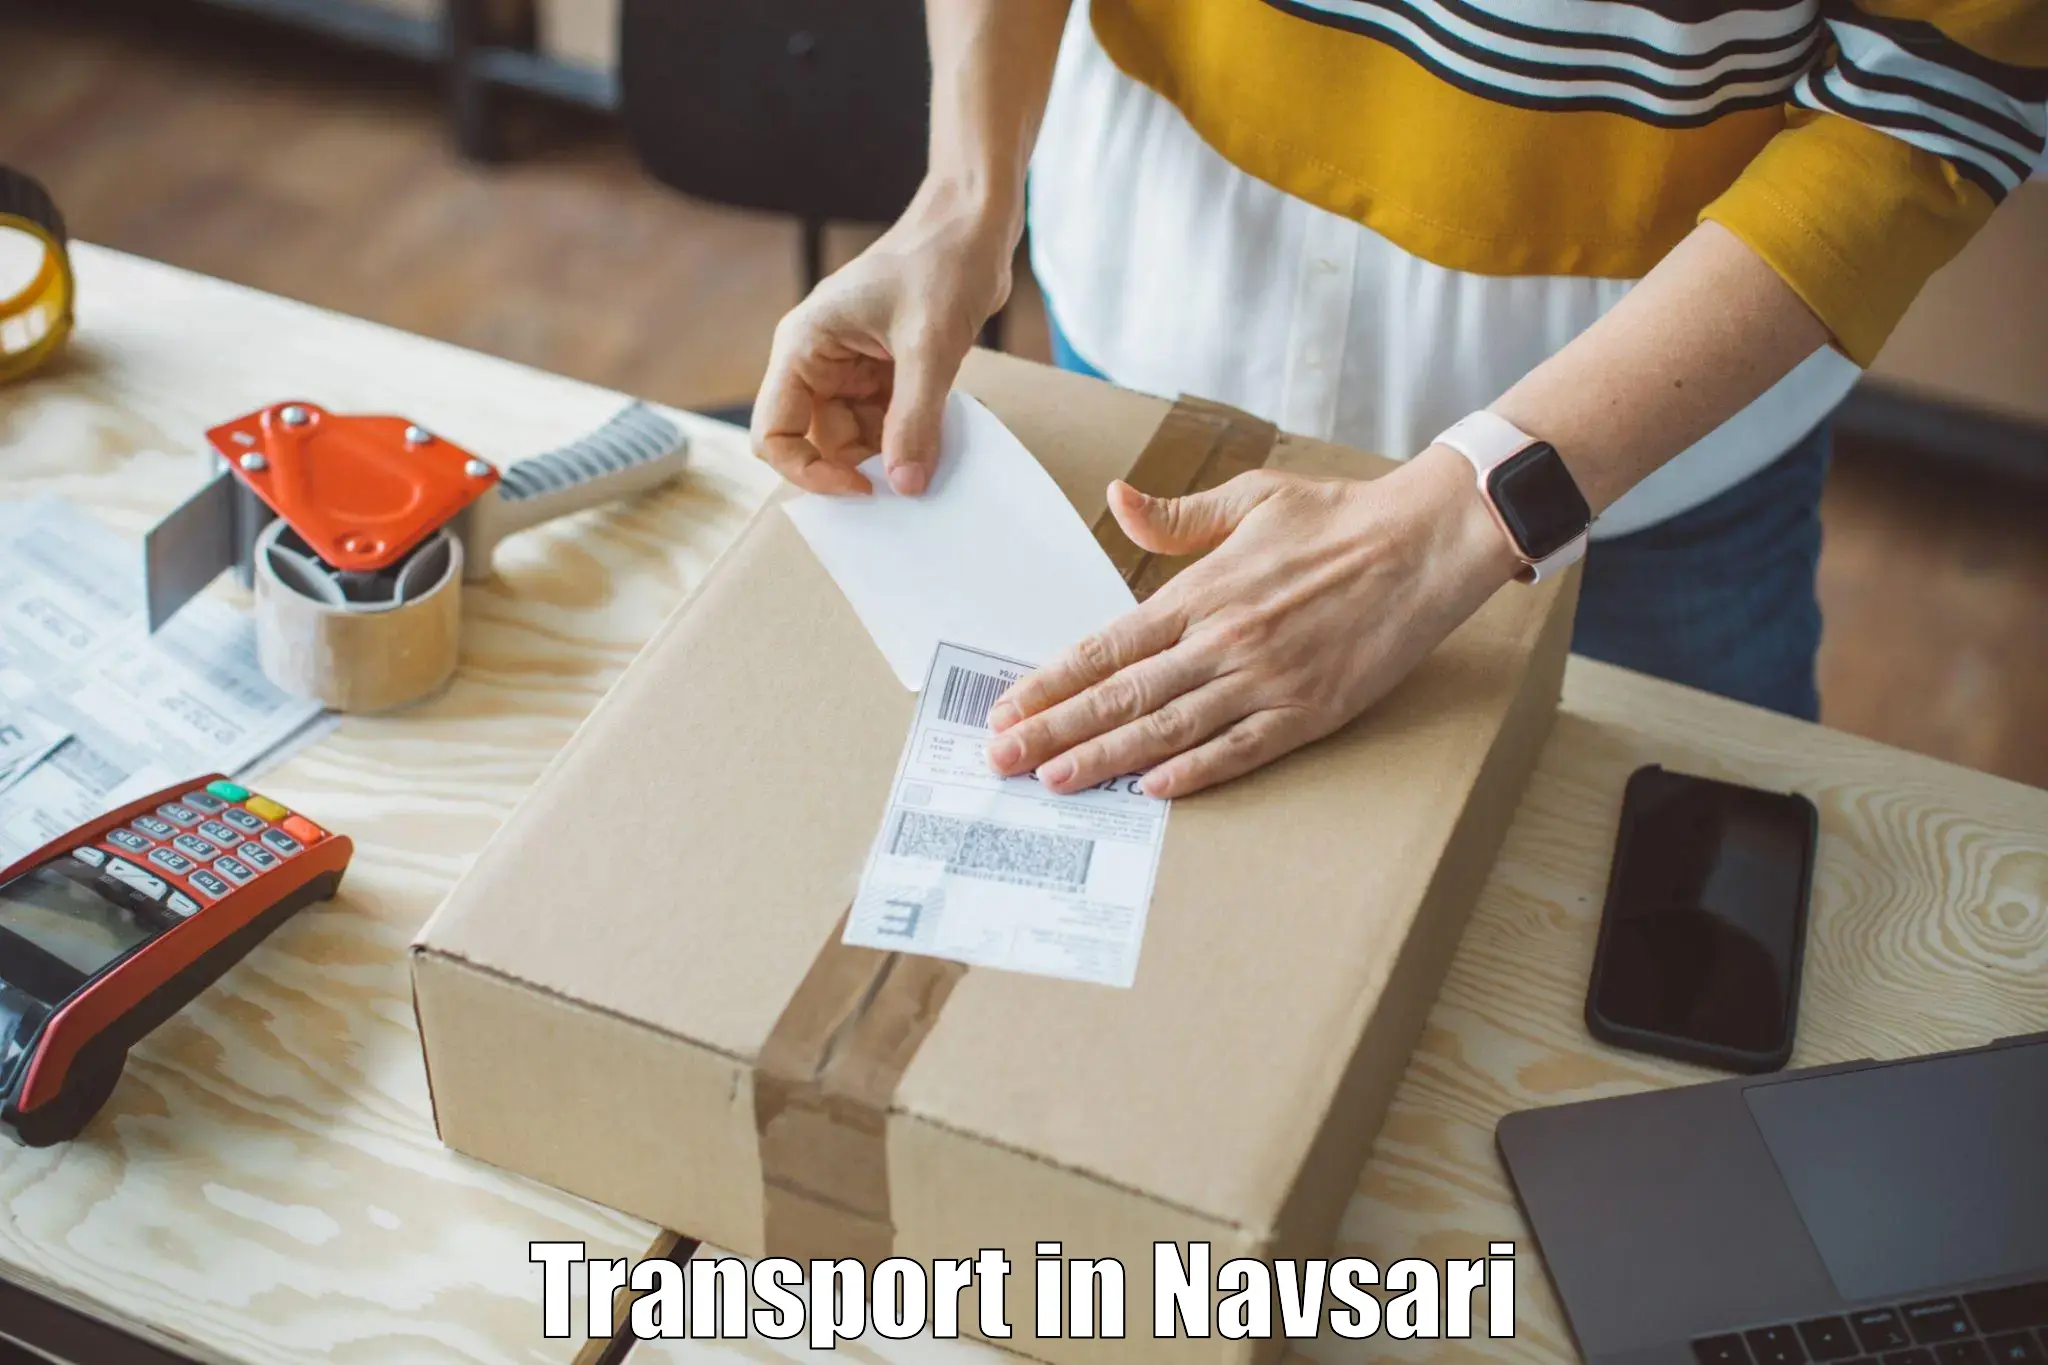 Transport in sharing in Navsari